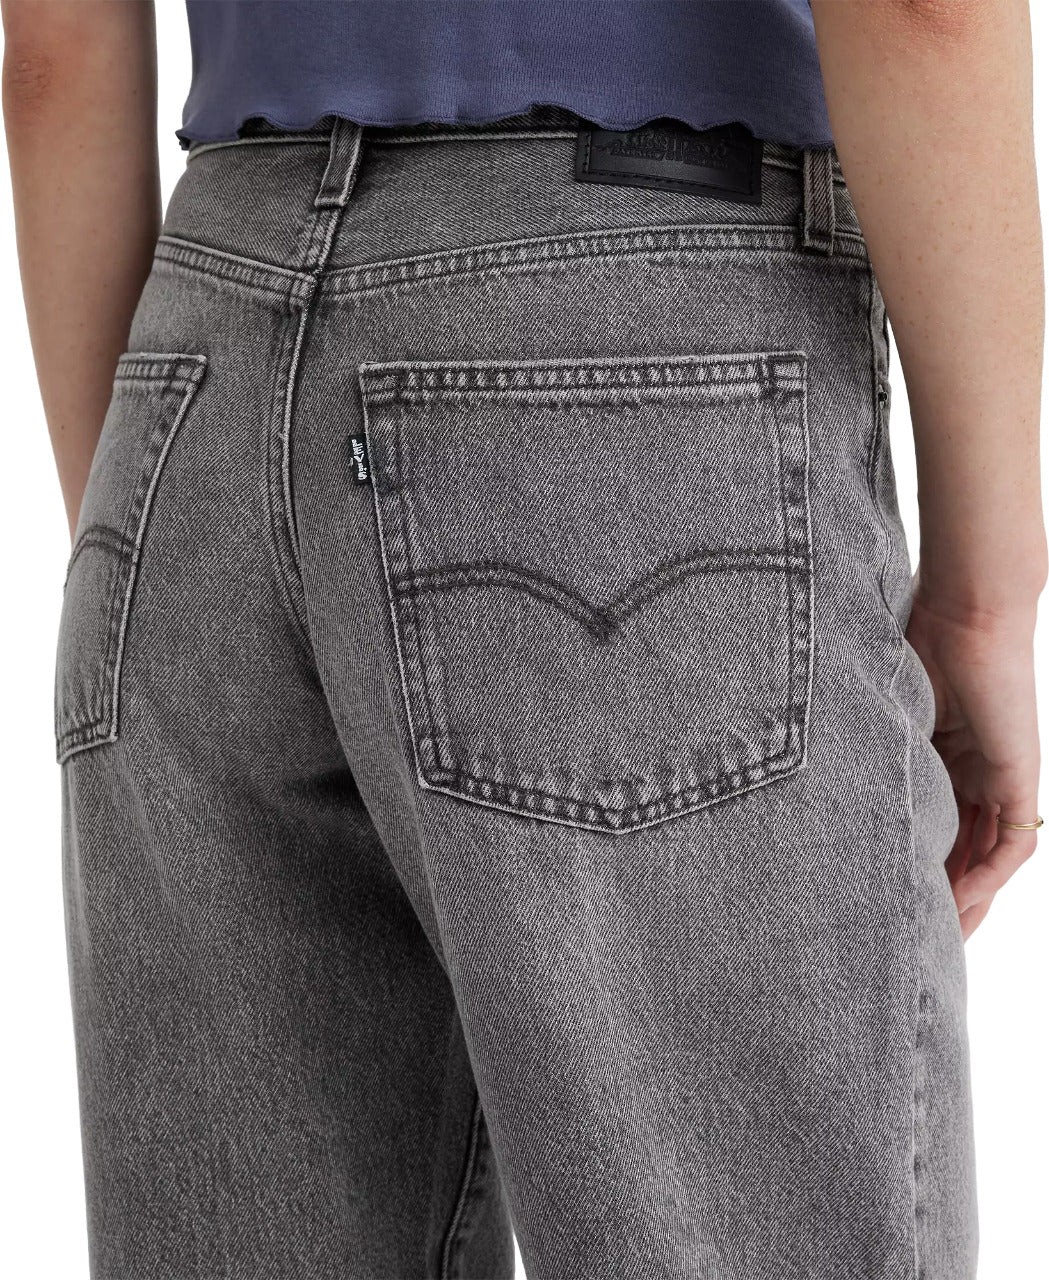 Levi's 501 '90s Original Jeans - Women's